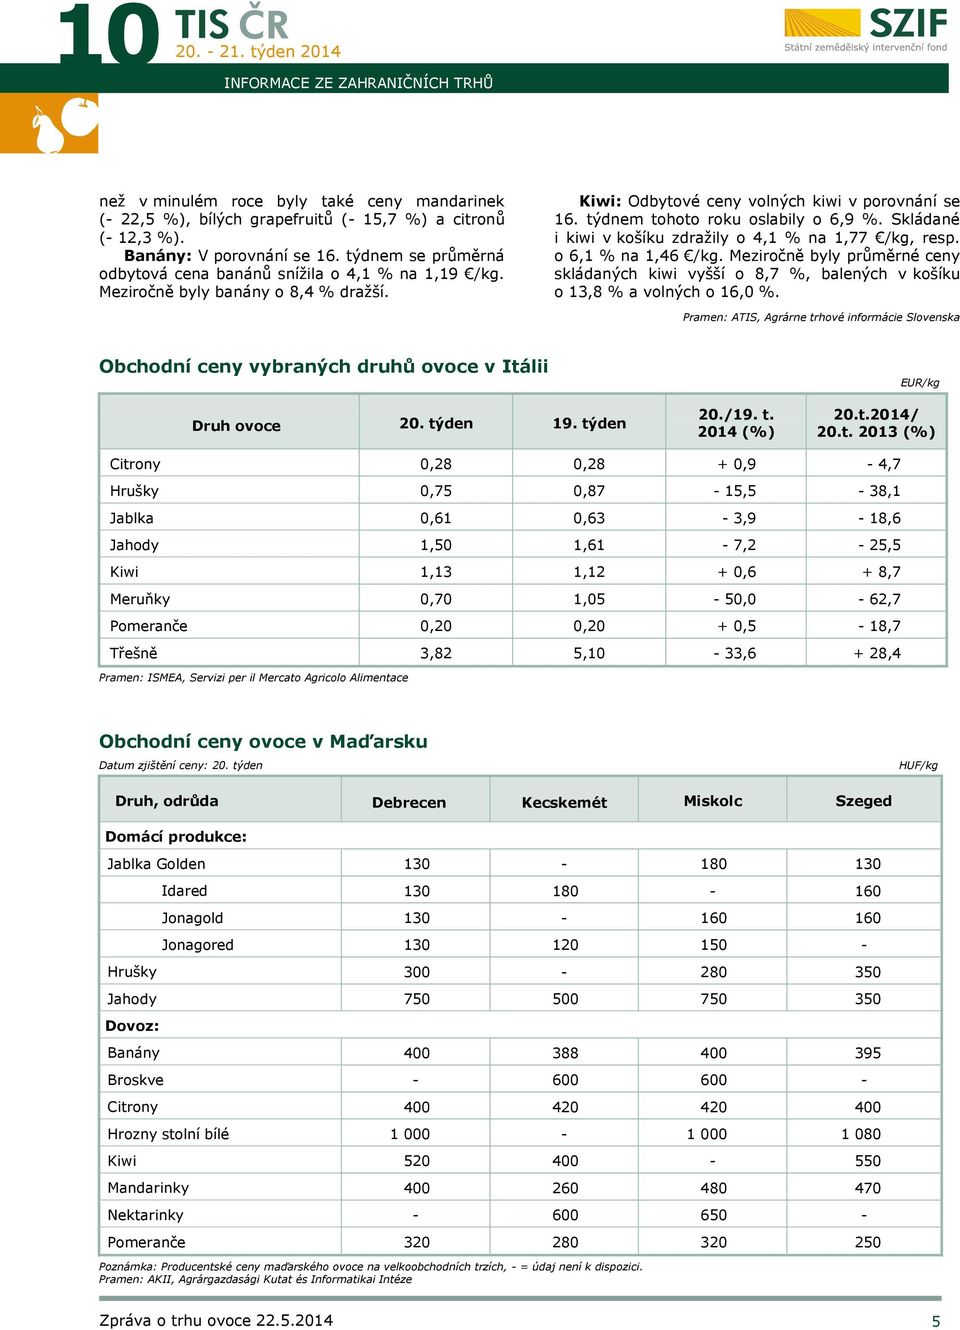 Skládané i kiwi v košíku zdražily o 4,1 % na 1,77 /kg, resp. o 6,1 % na 1,46 /kg. Meziročně byly průměrné ceny skládaných kiwi vyšší o 8,7 %, balených v košíku o 13,8 % a volných o 16,0 %.